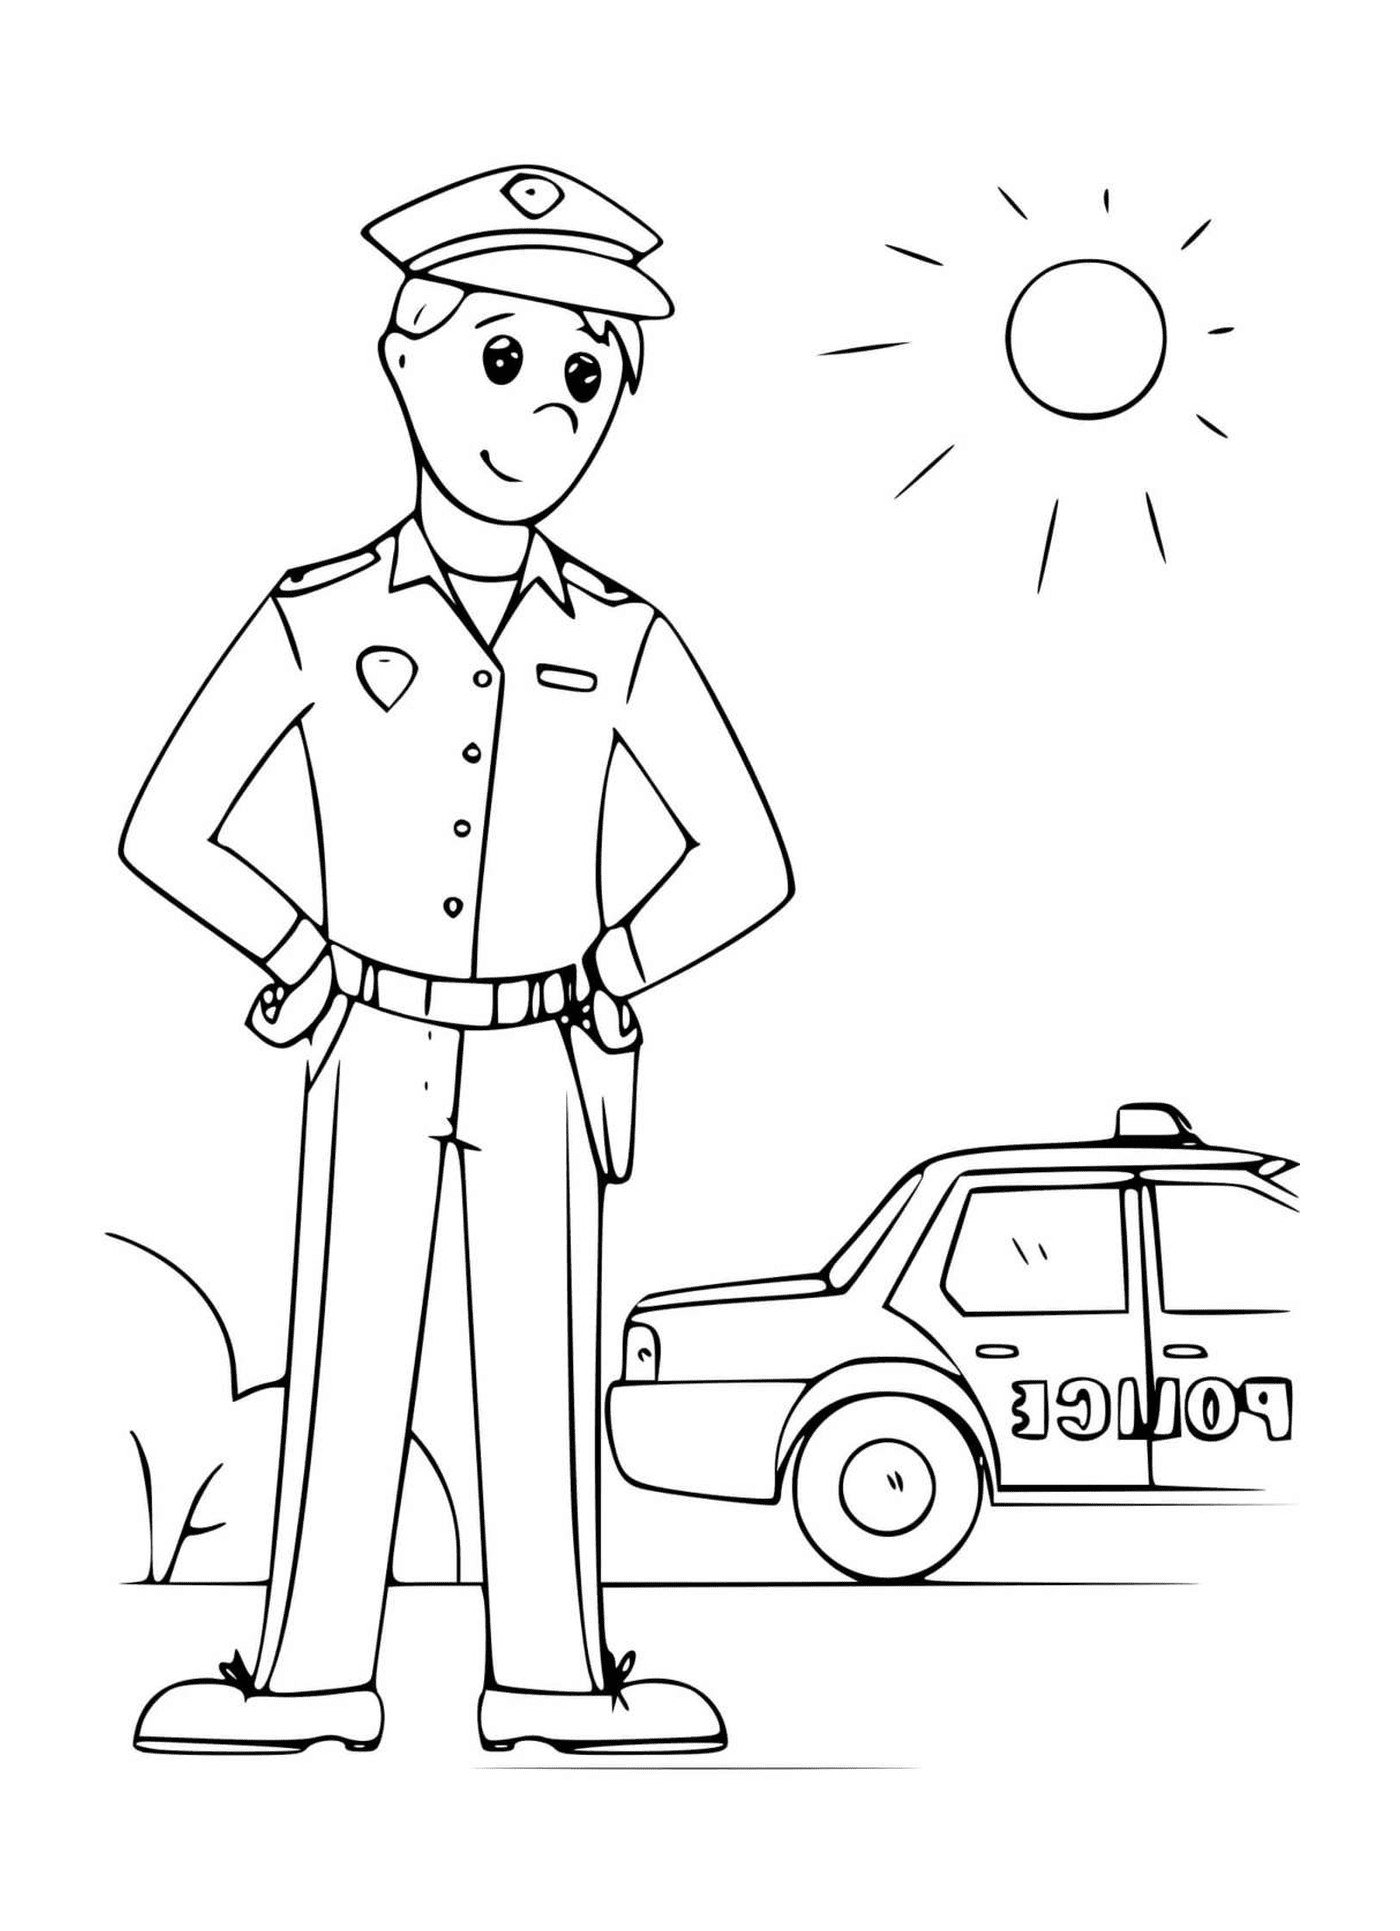  Полицейский перед солнечным автомобилем 